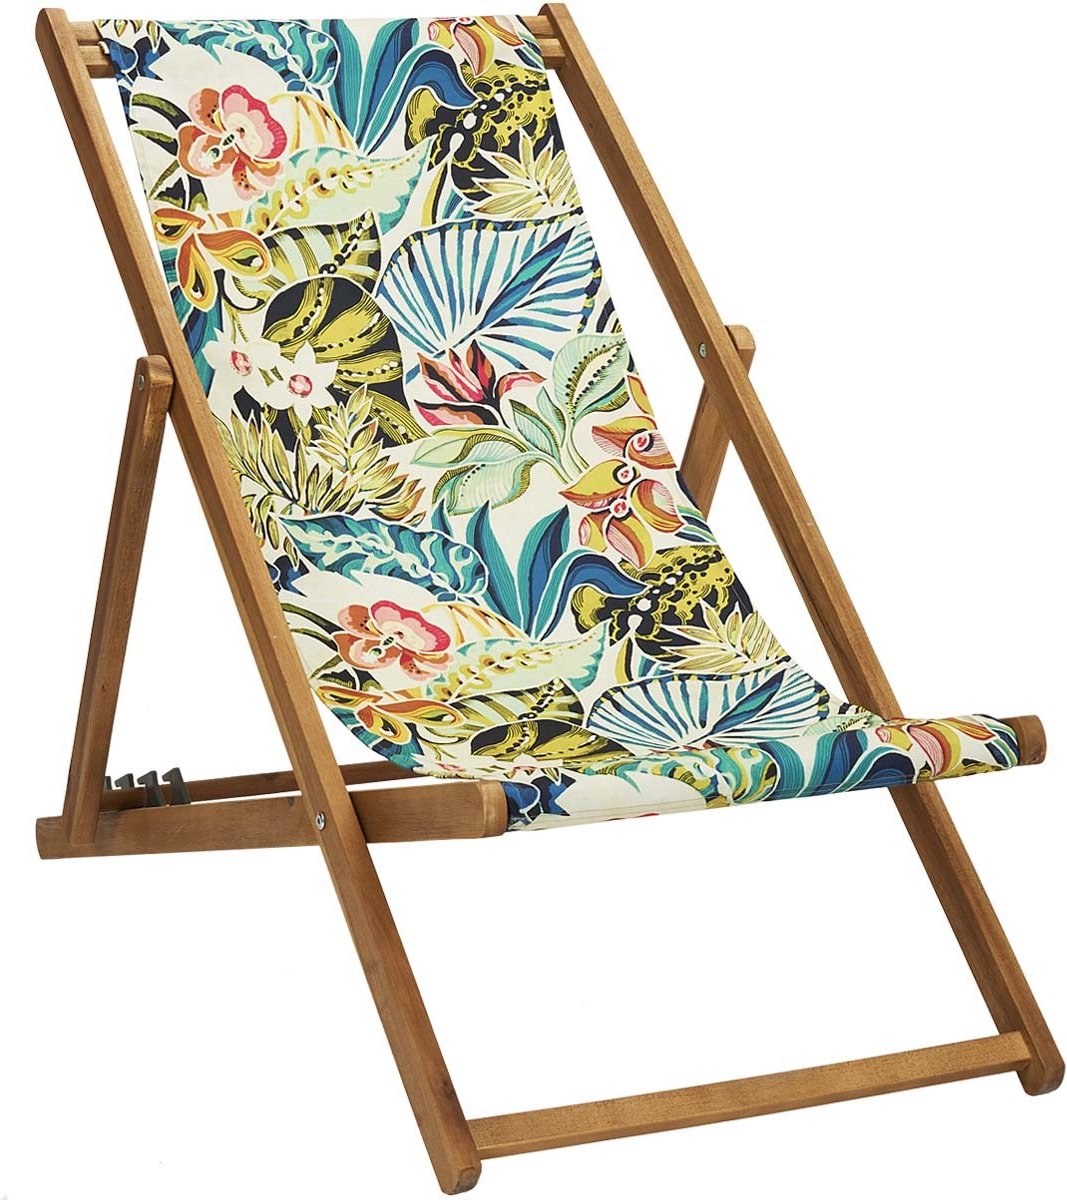 Houten Strandstoel met Tropisch Bamboo design - Ligstoel - Tuinstoel - Acaciahout - met vier verstelbare rugleuning posities